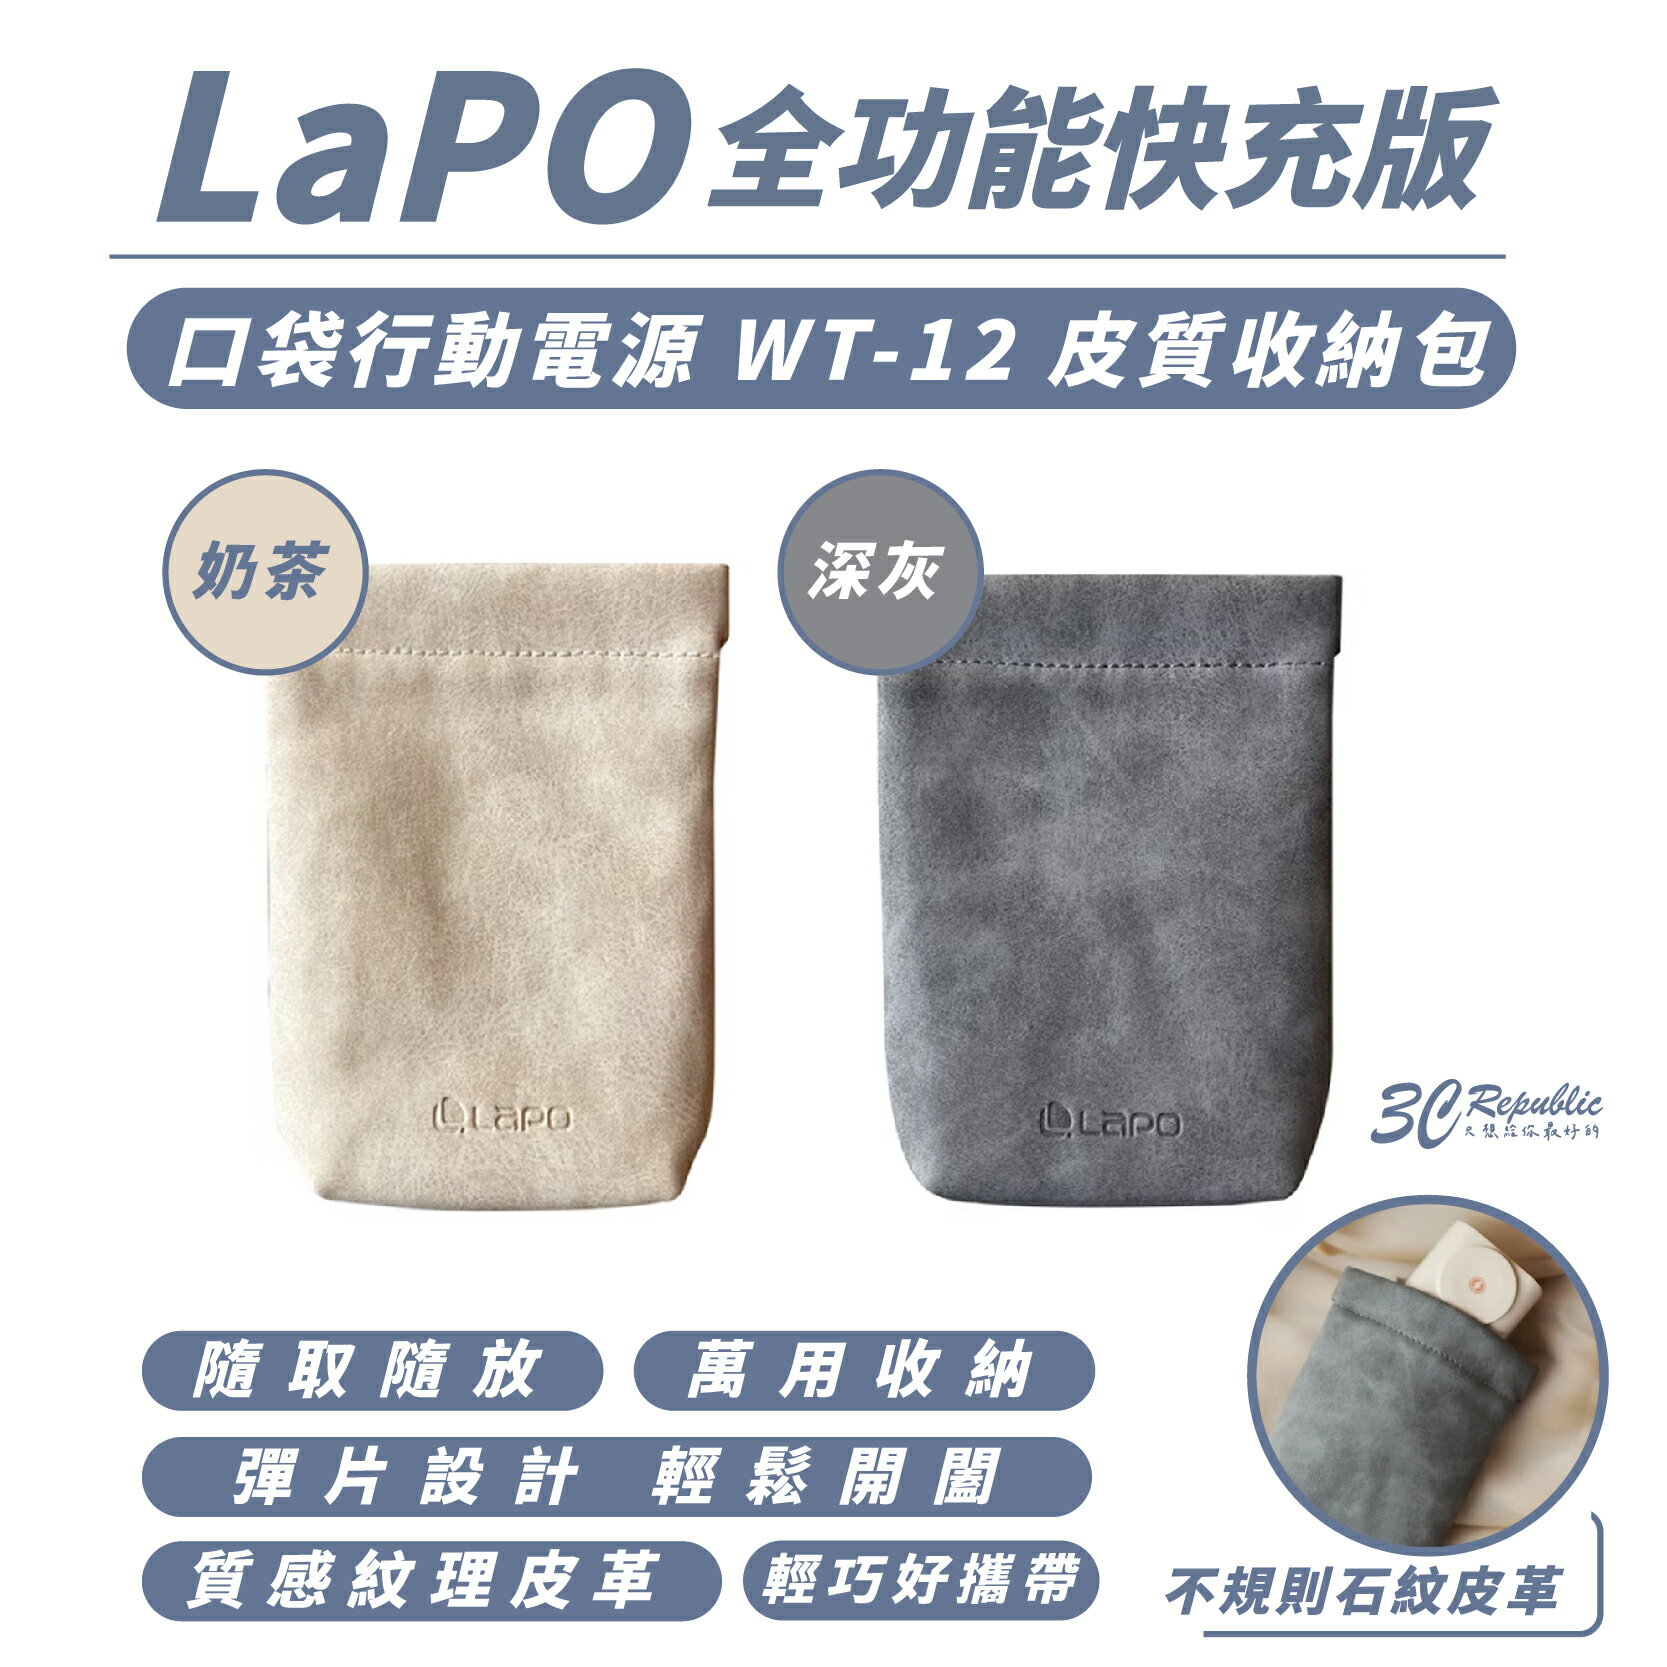 LaPO 行動電源 皮質 收納袋 收納包 束口包 適 口袋行動電源 WT-12